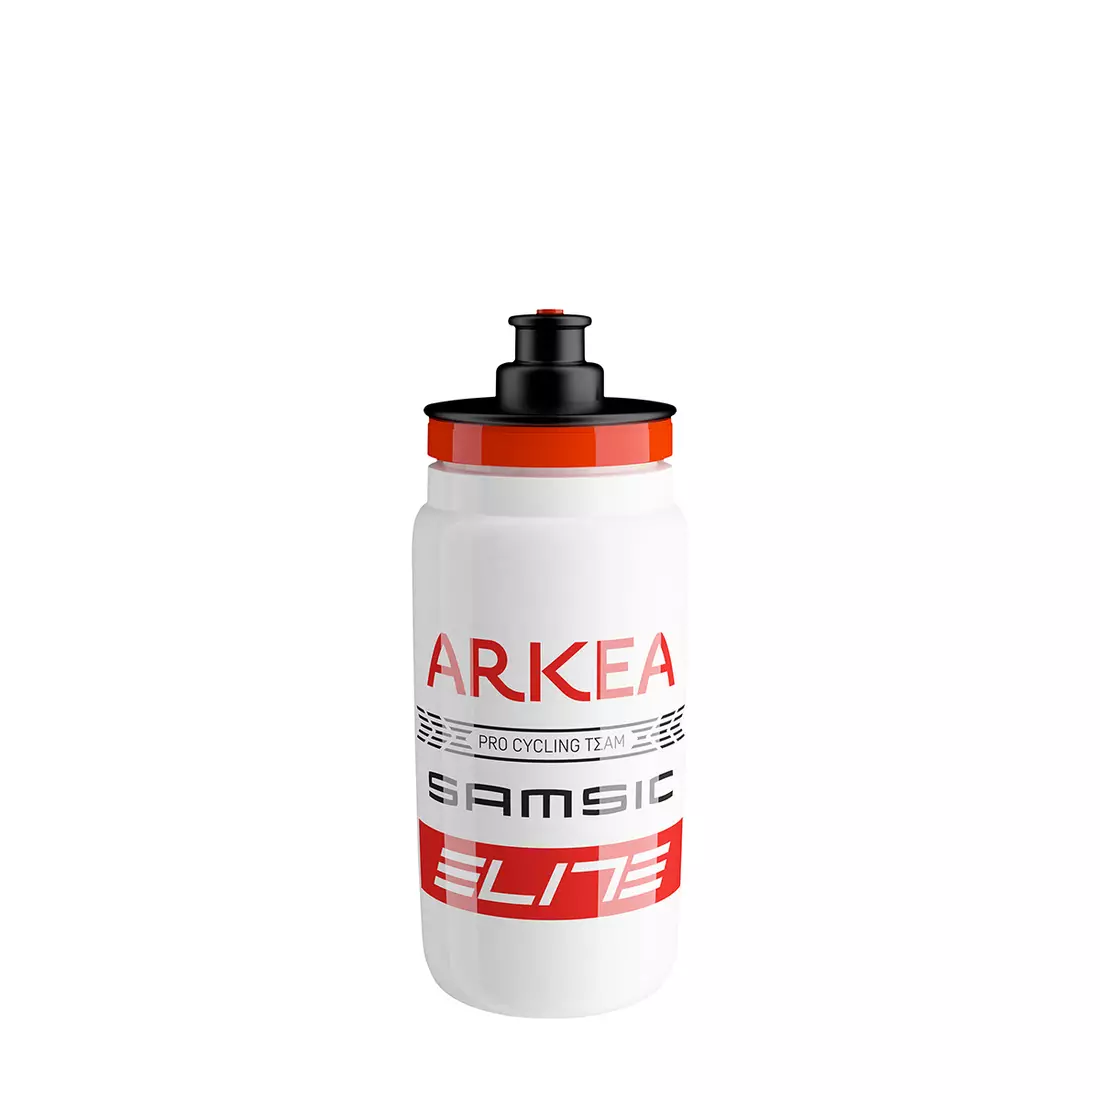 ELITE Bicycle water bottle FLY TEAMS 2020 Arkea Samsic, 550ml EL01604343